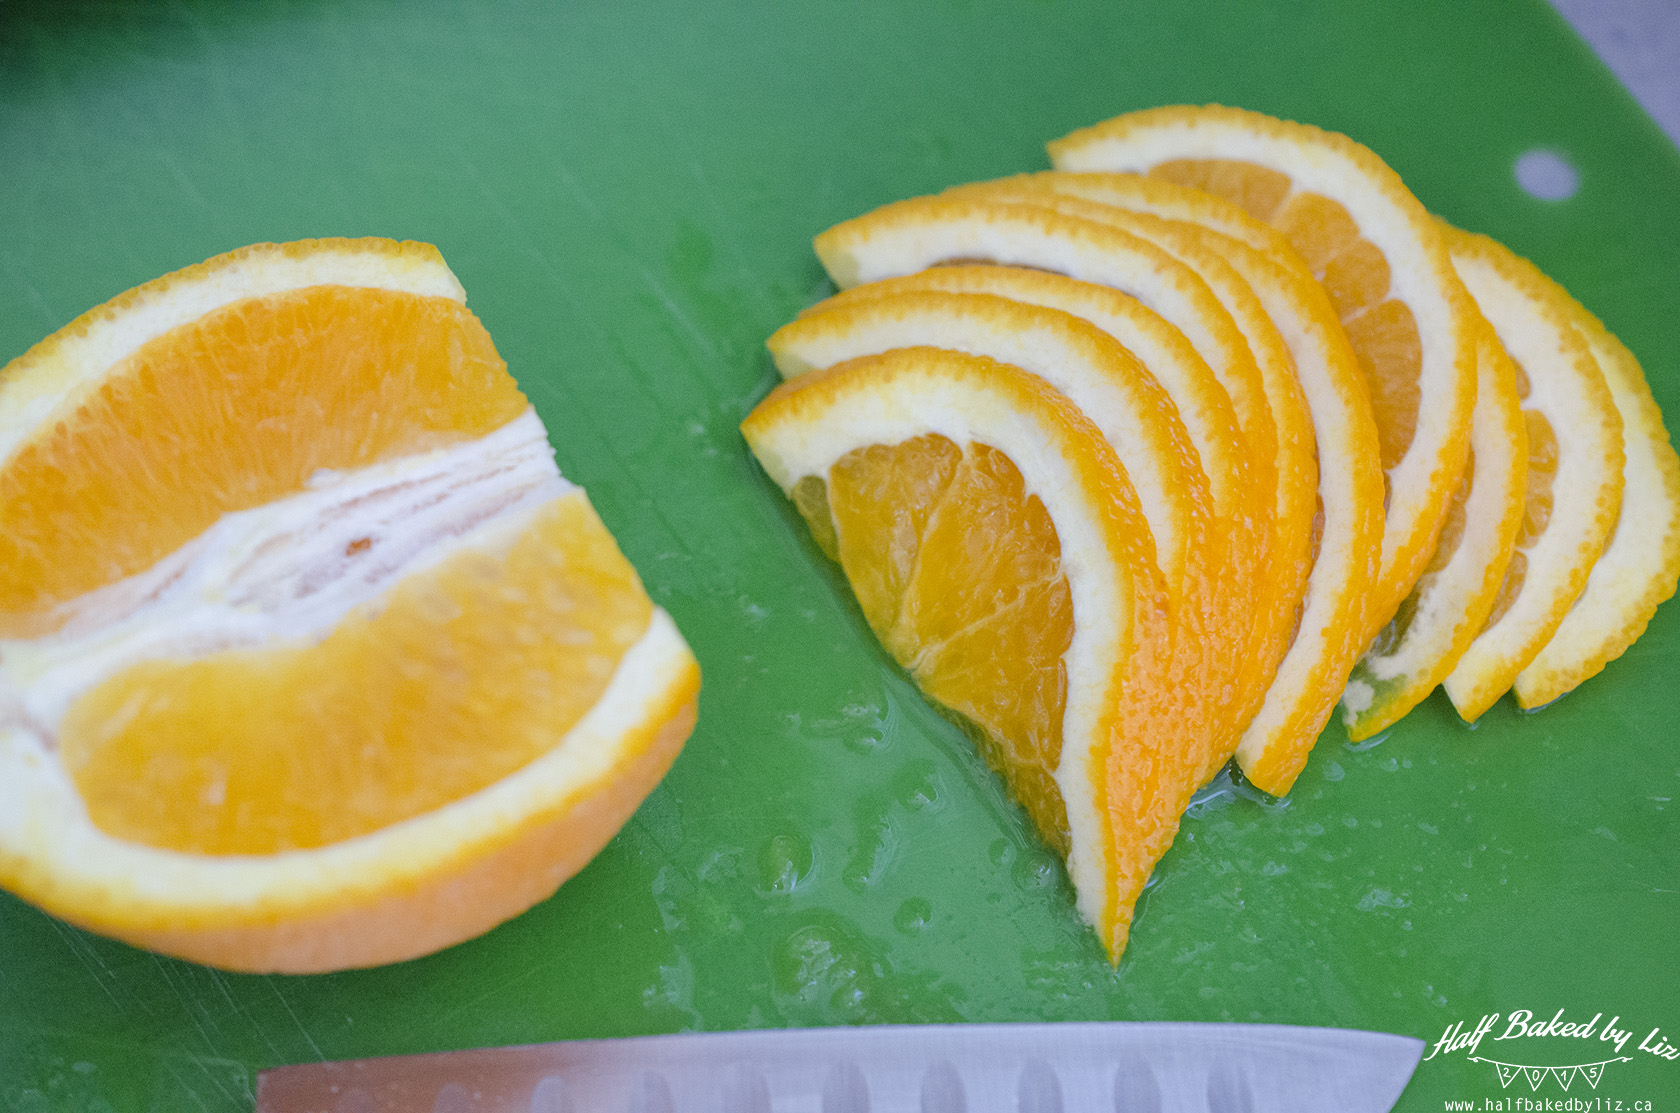 1 - Orange Slices